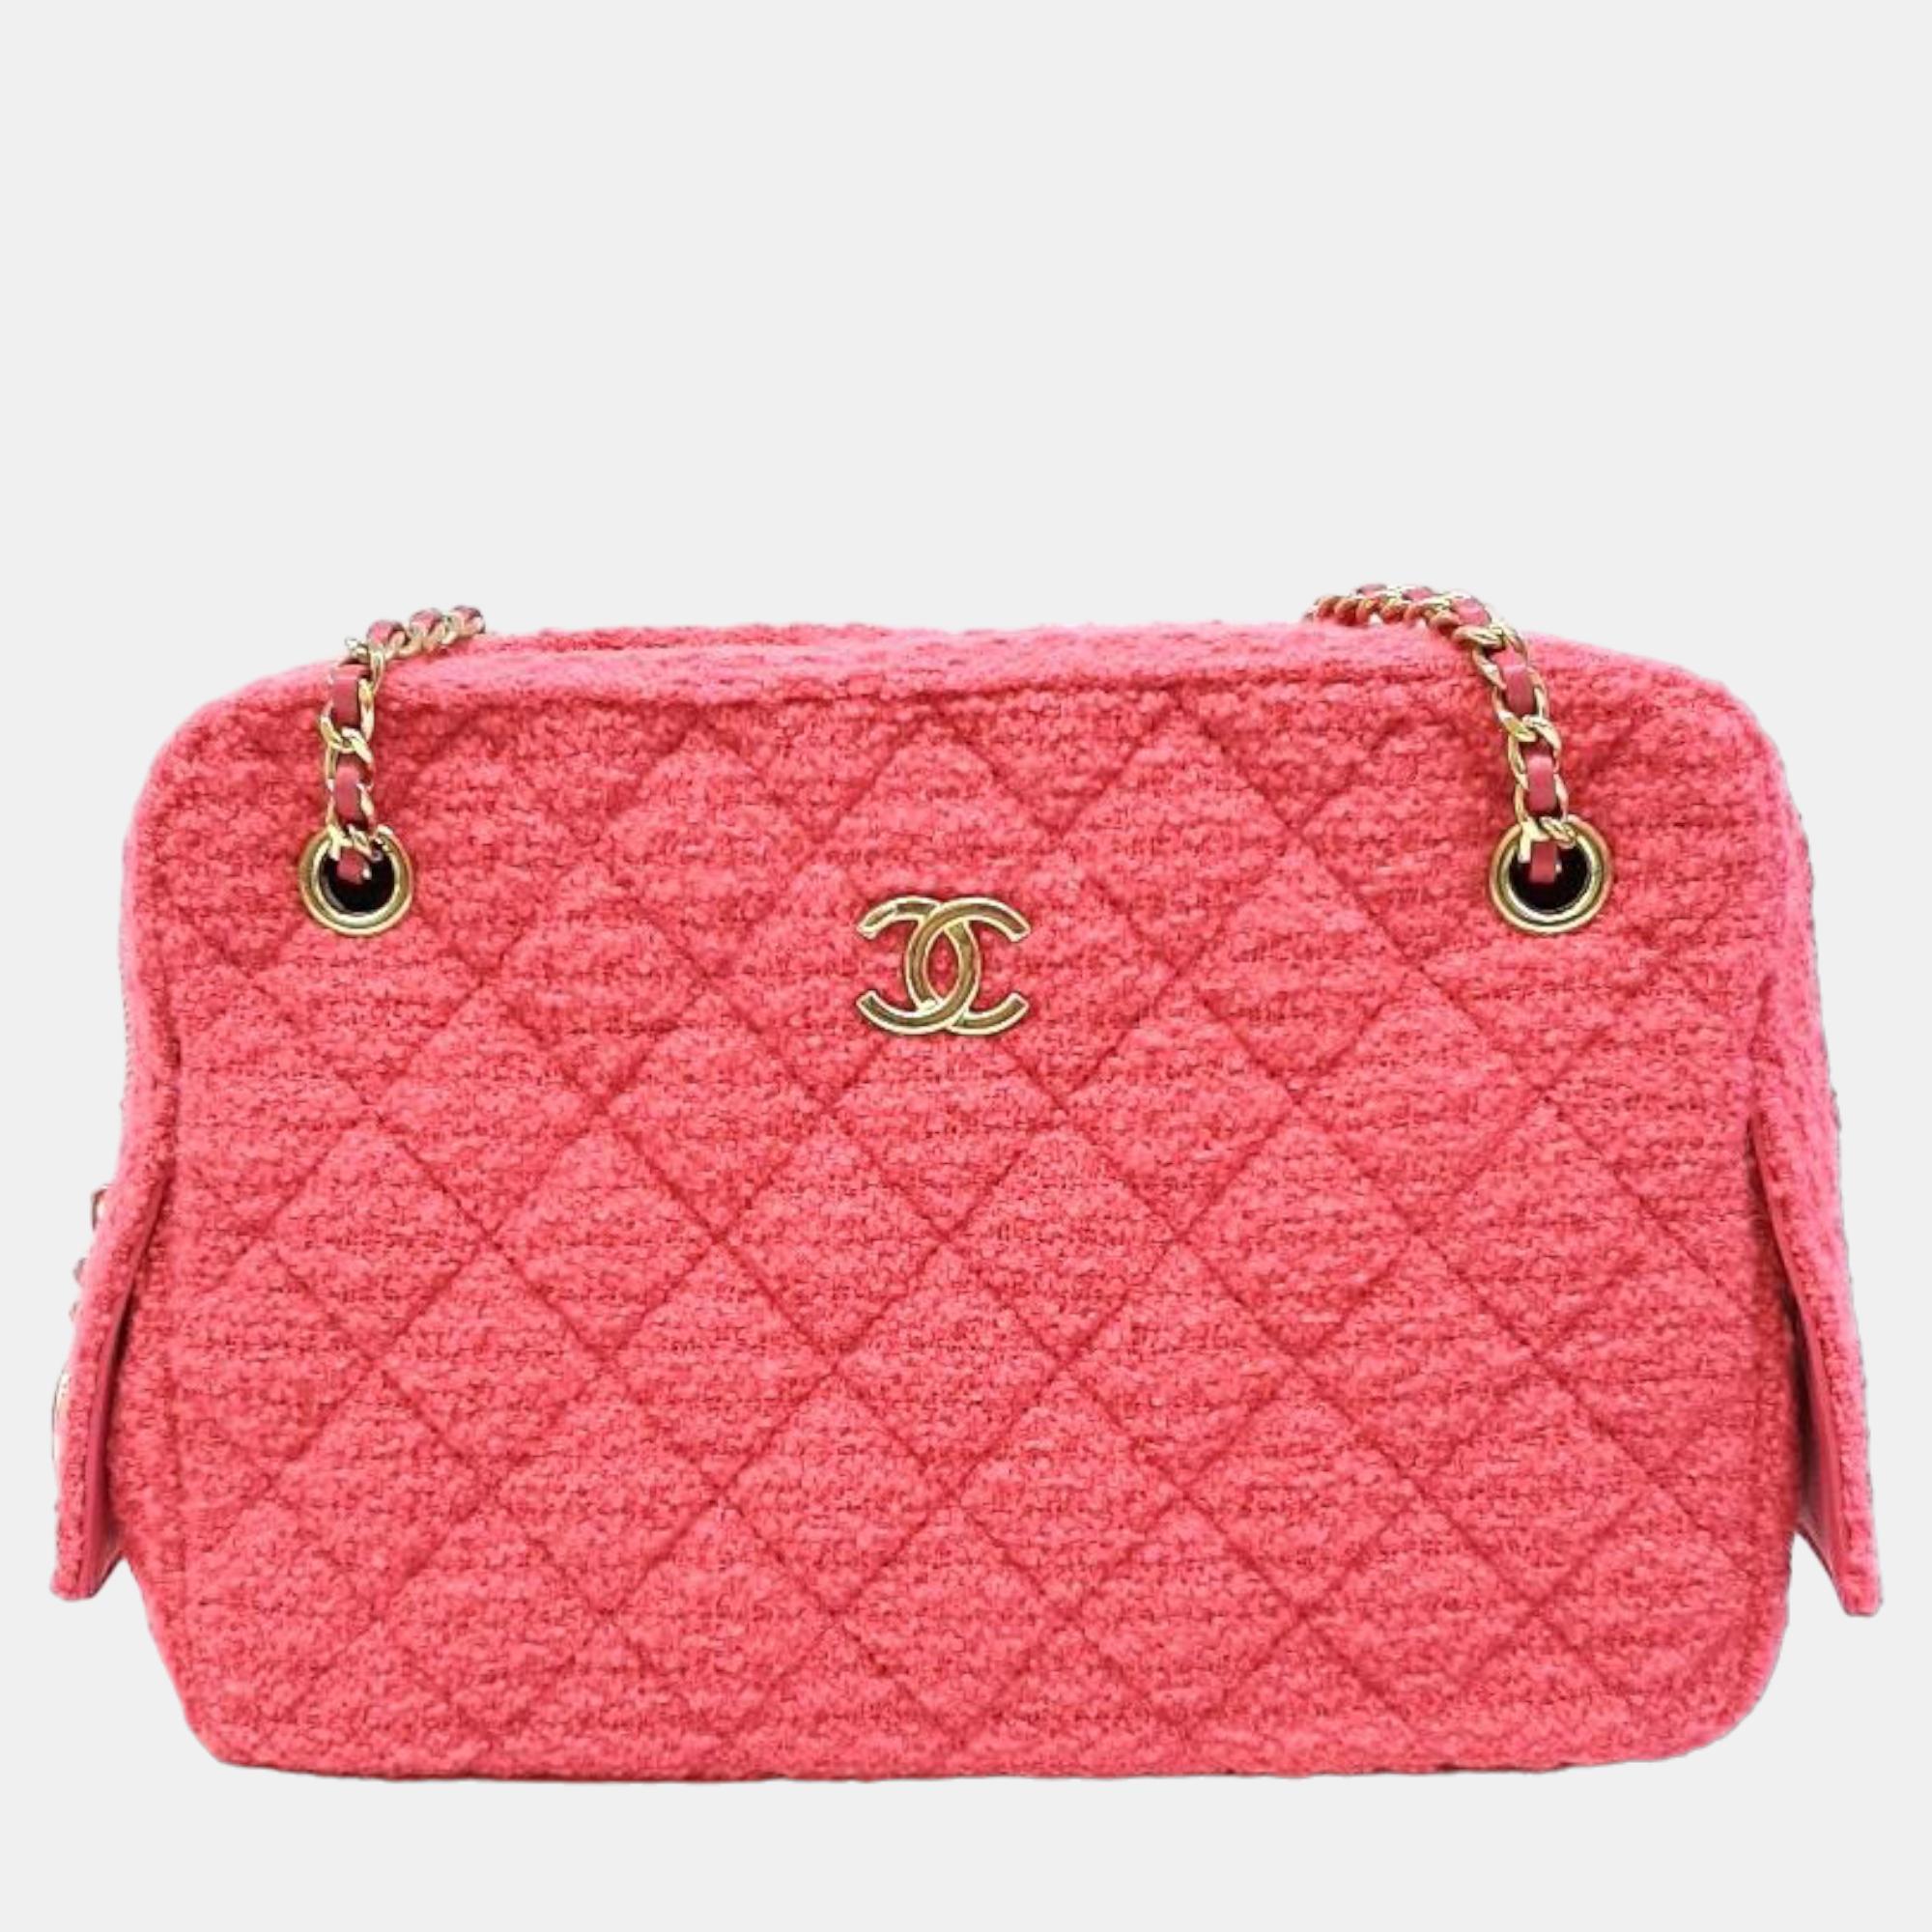 Chanel pink leather tweed camera shoulder bag